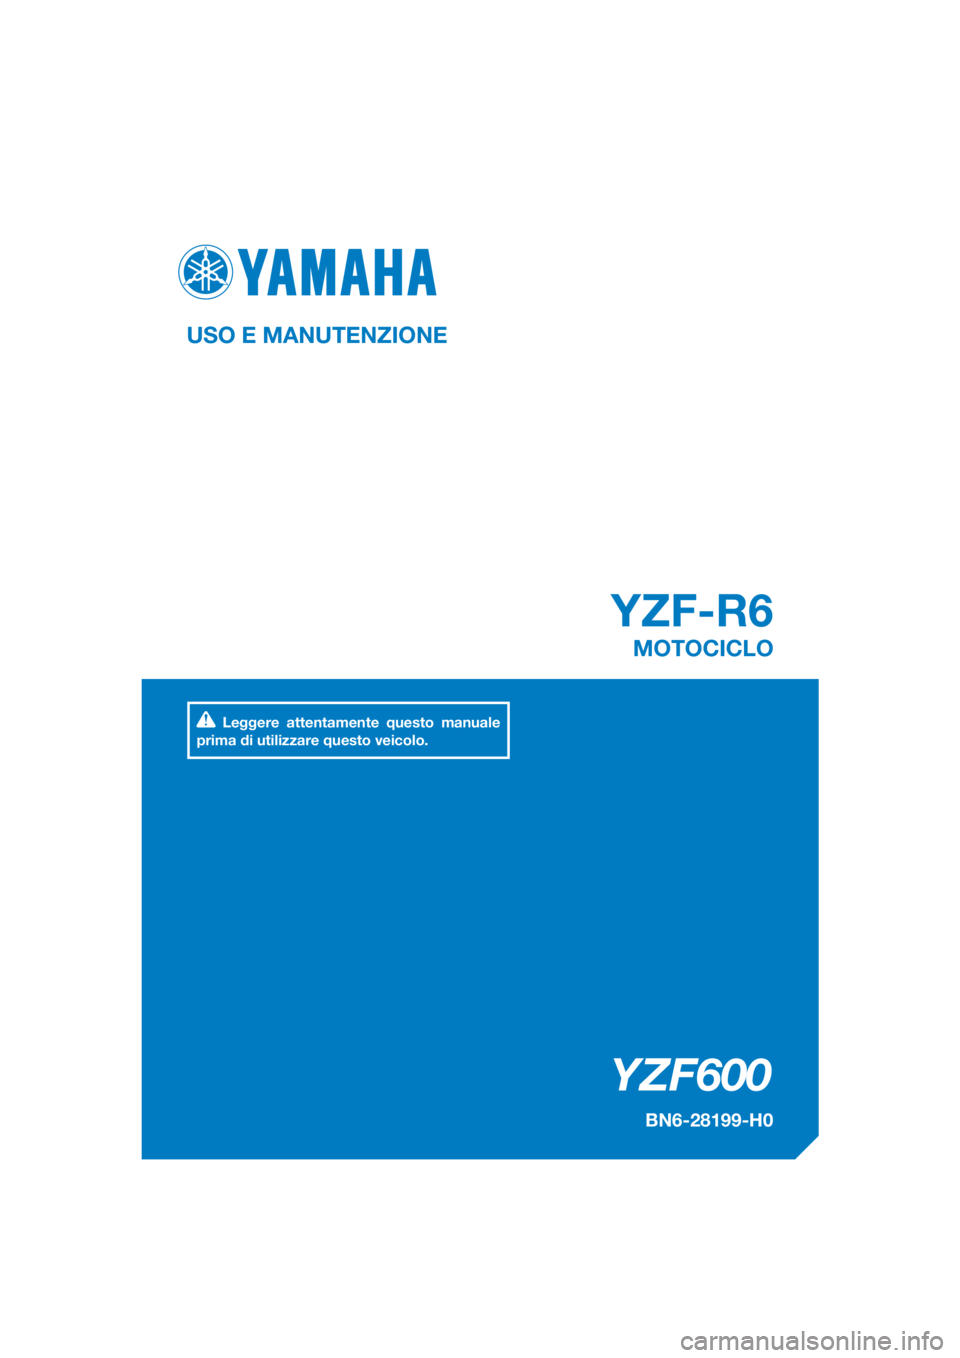 YAMAHA YZF-R6 2017  Manuale duso (in Italian) DIC183
YZF600
YZF-R6
USO E MANUTENZIONE
BN6-28199-H0
MOTOCICLO
Leggere attentamente questo manuale 
prima di utilizzare questo veicolo.
[Italian  (H)] 